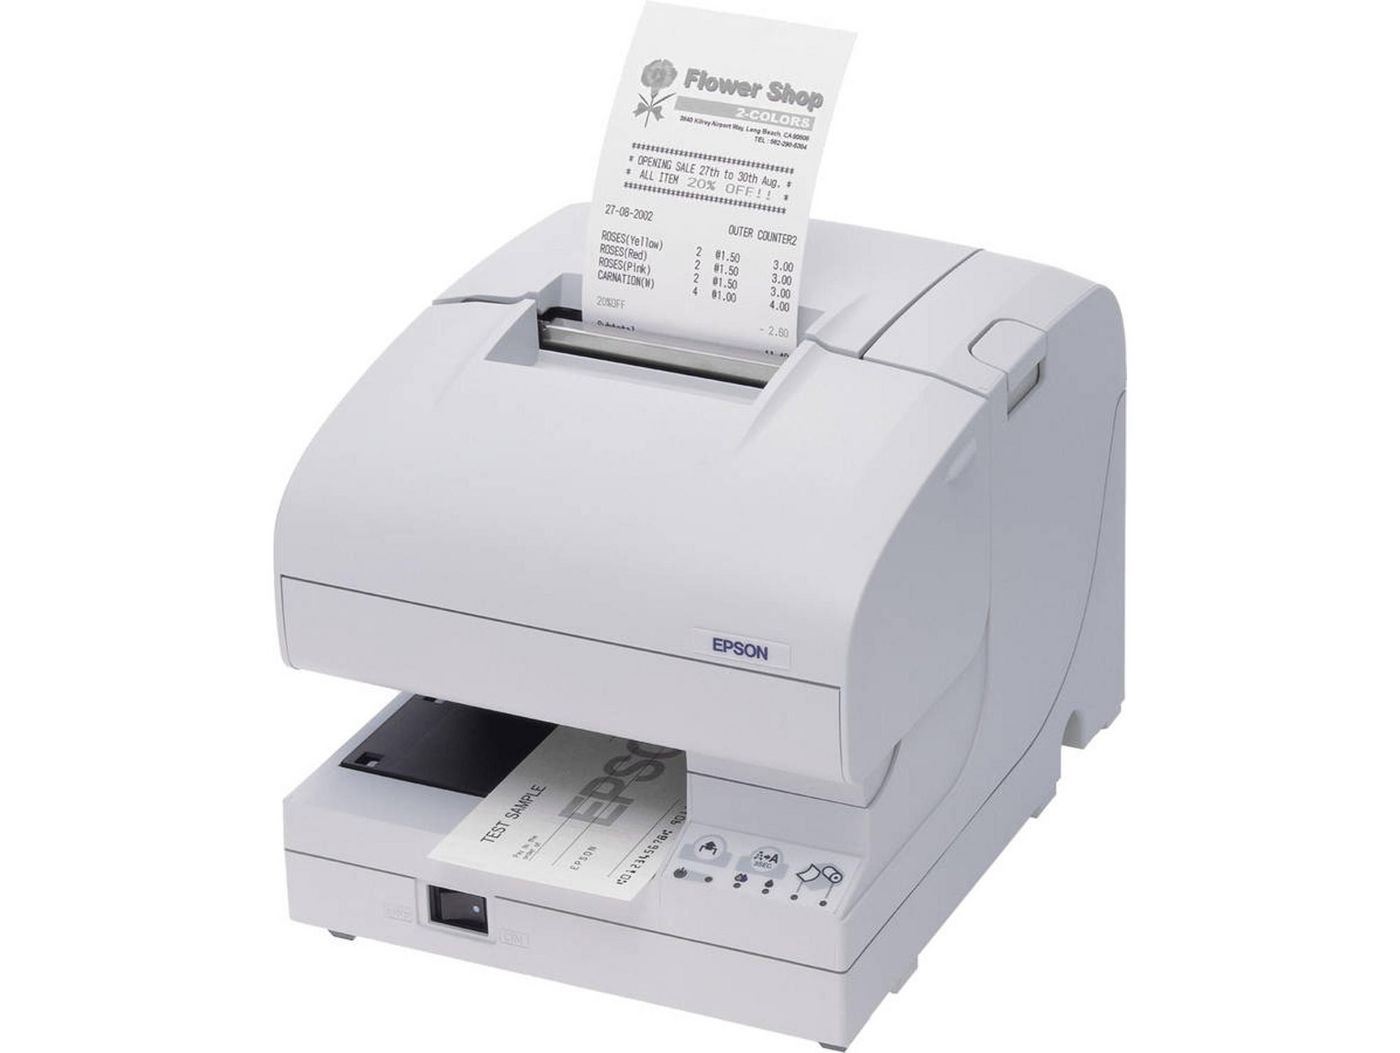 Tm-j7700 (321) - Receipt Printer - Inkjet - 58 Mm - 83 Mm - USB / Ethernet - White